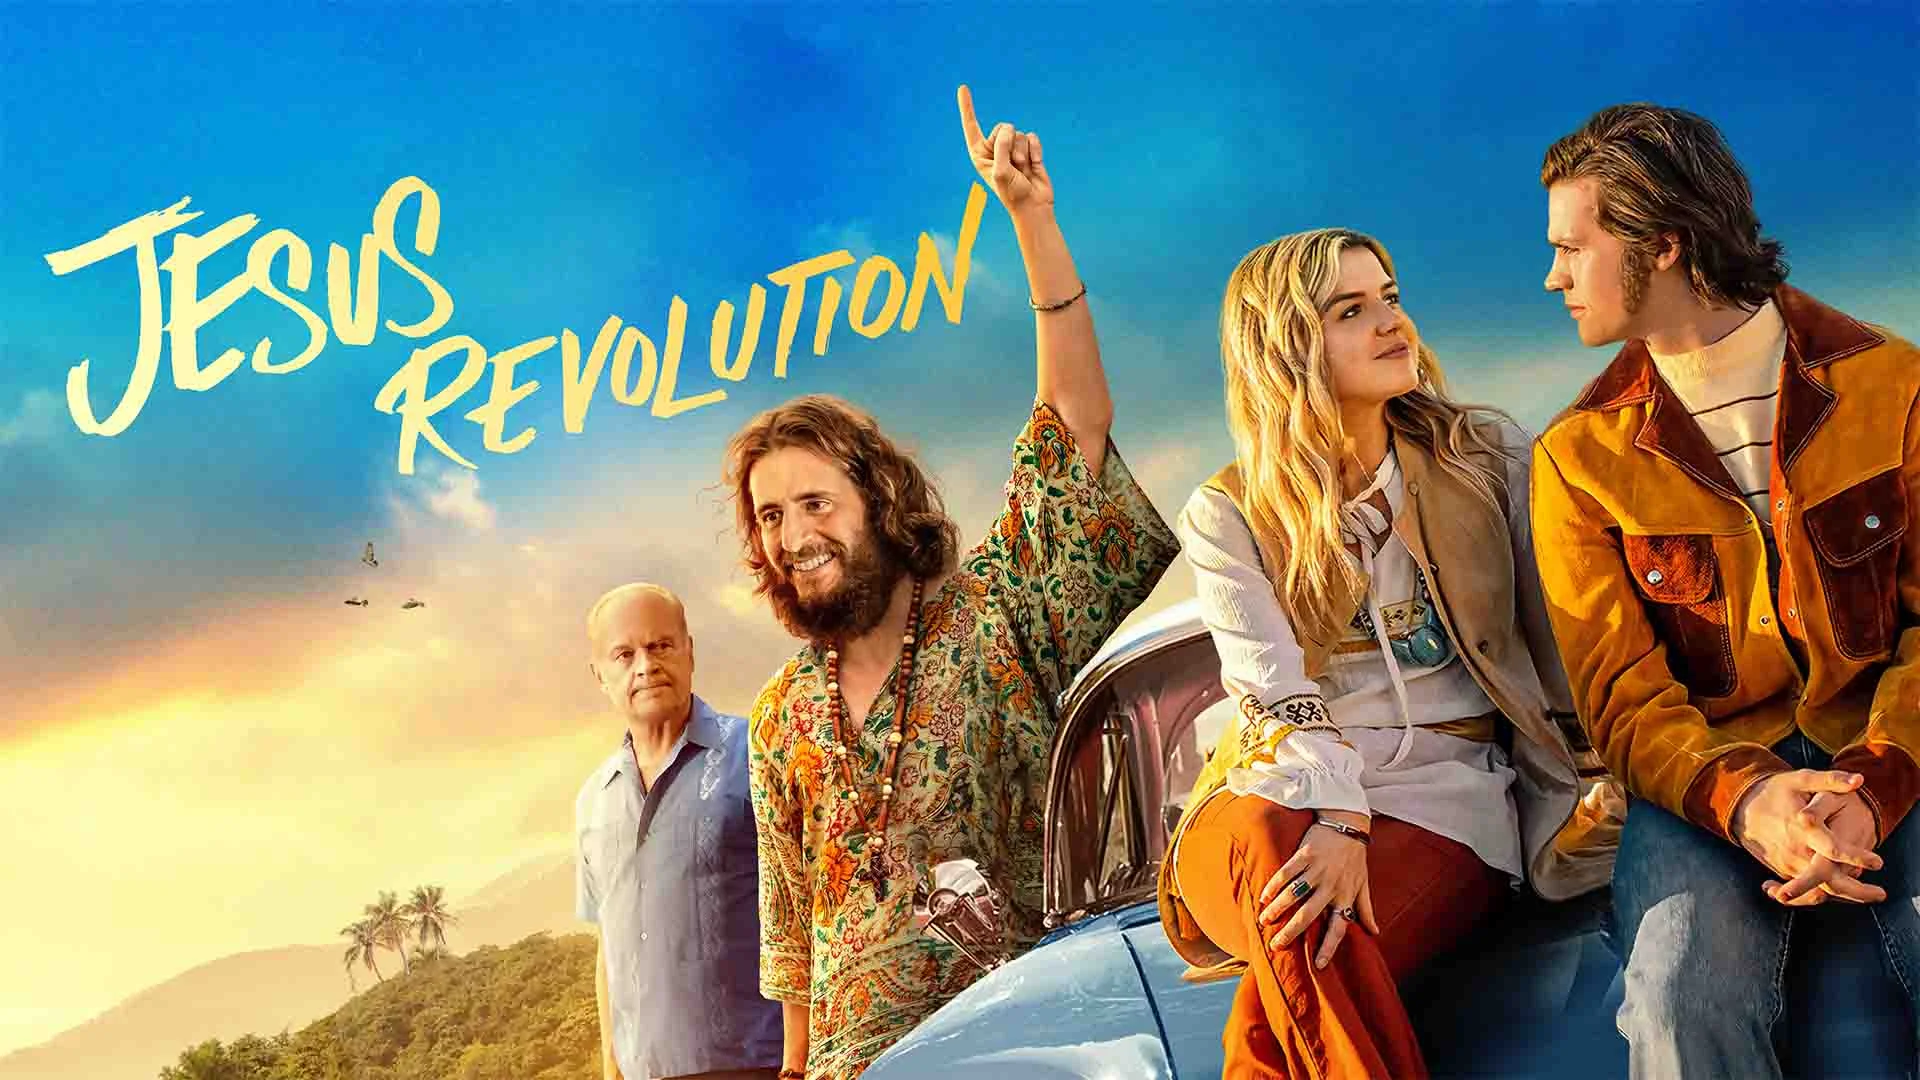 Jesus Revolution - Watch Movies Online